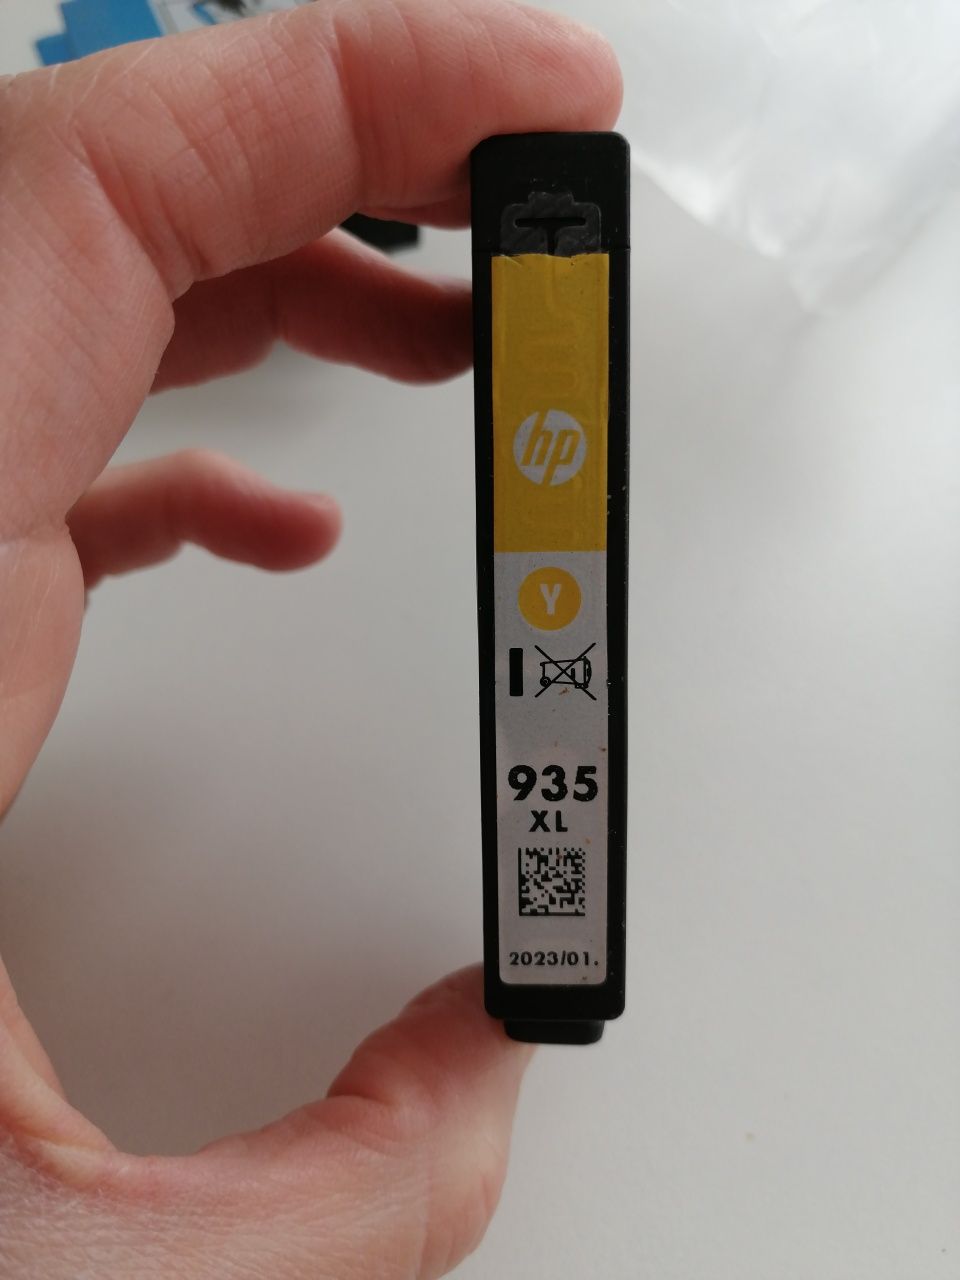 HP kartridż 934 czarny, 935 XL żółty, czerwony, niebieski